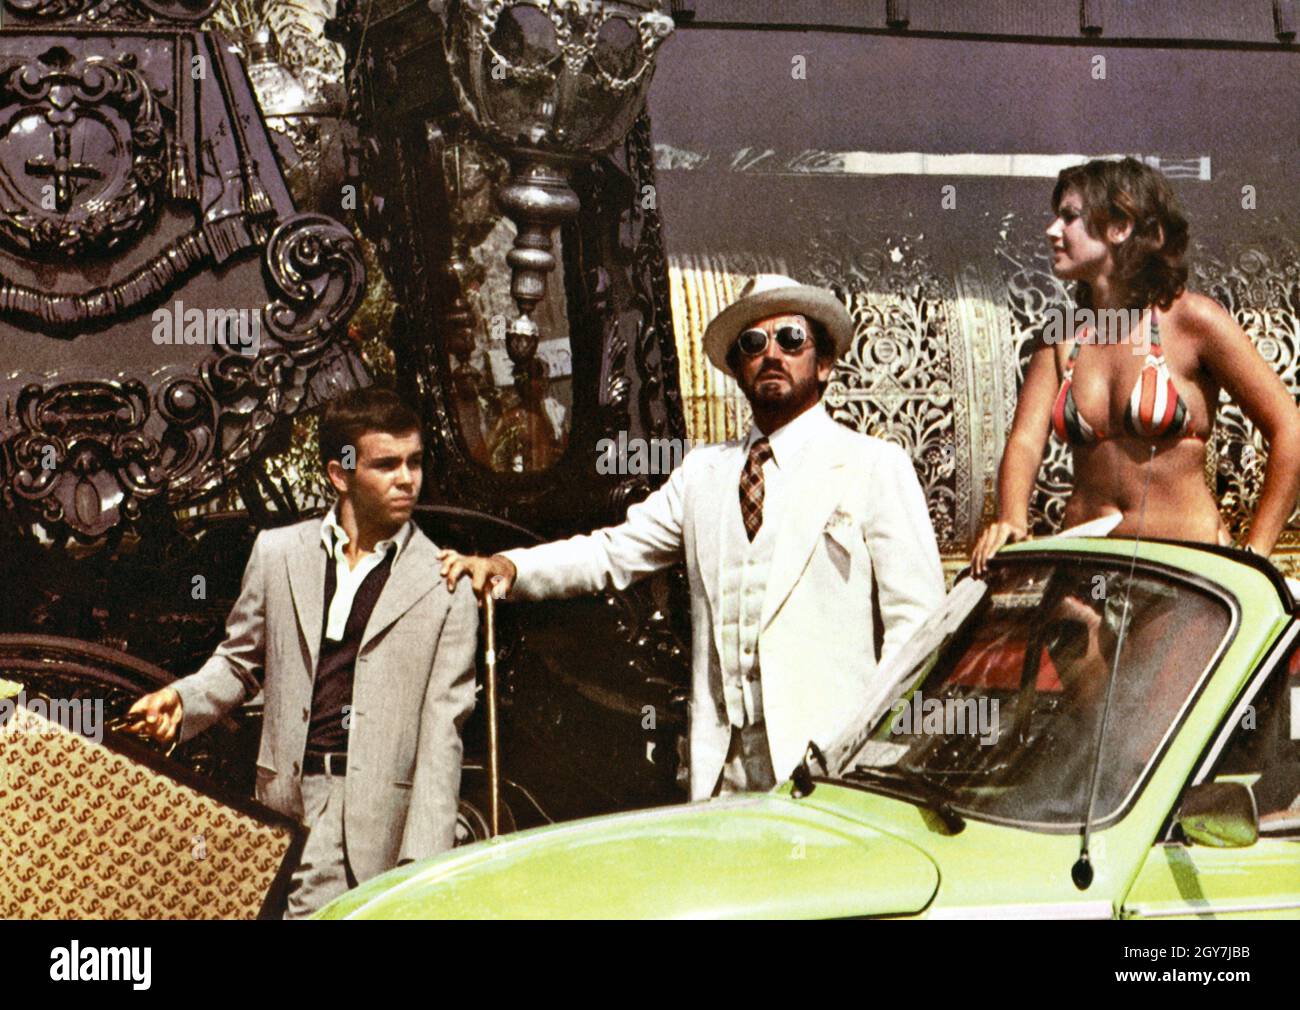 Profumo di donna  Scent of a woman Year: 1974 - Italy Alessandro Momo, Vittorio Gassman, Agostina Belli  Director: Dino Risi Stock Photo